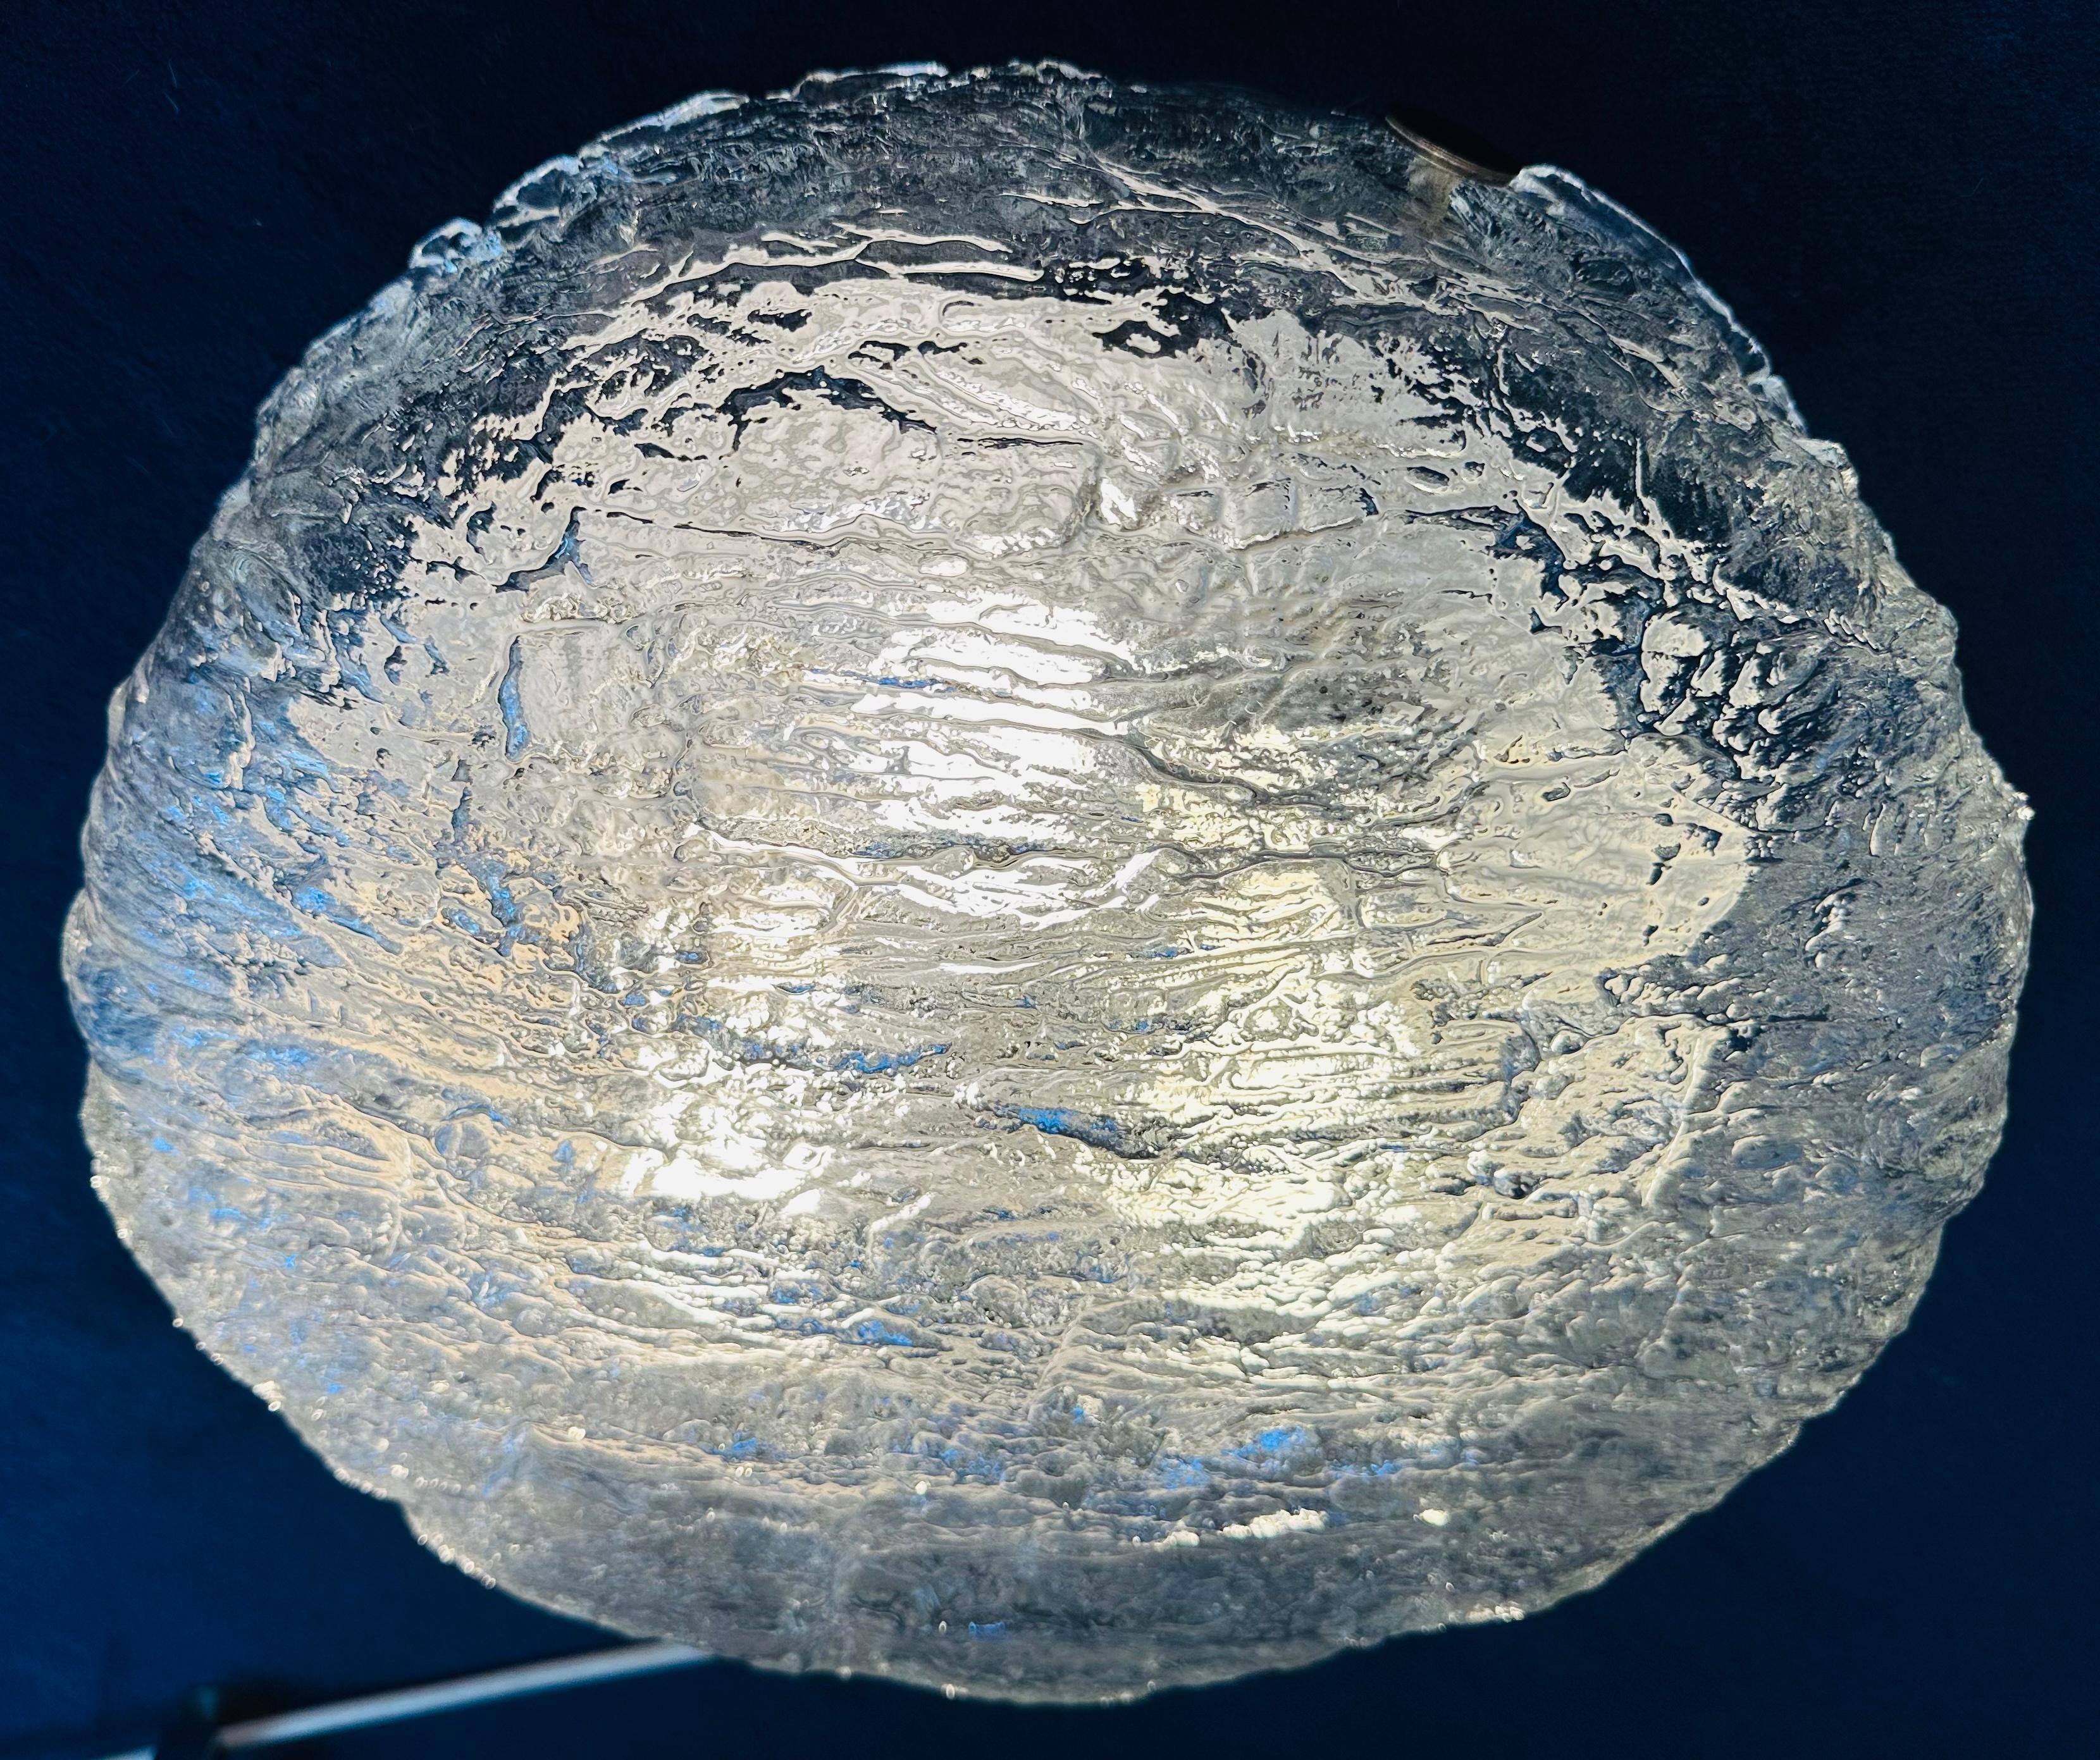 1970s German Kaiser Leuchten Textured Clear Glass Circular Flush Mount Light For Sale 1